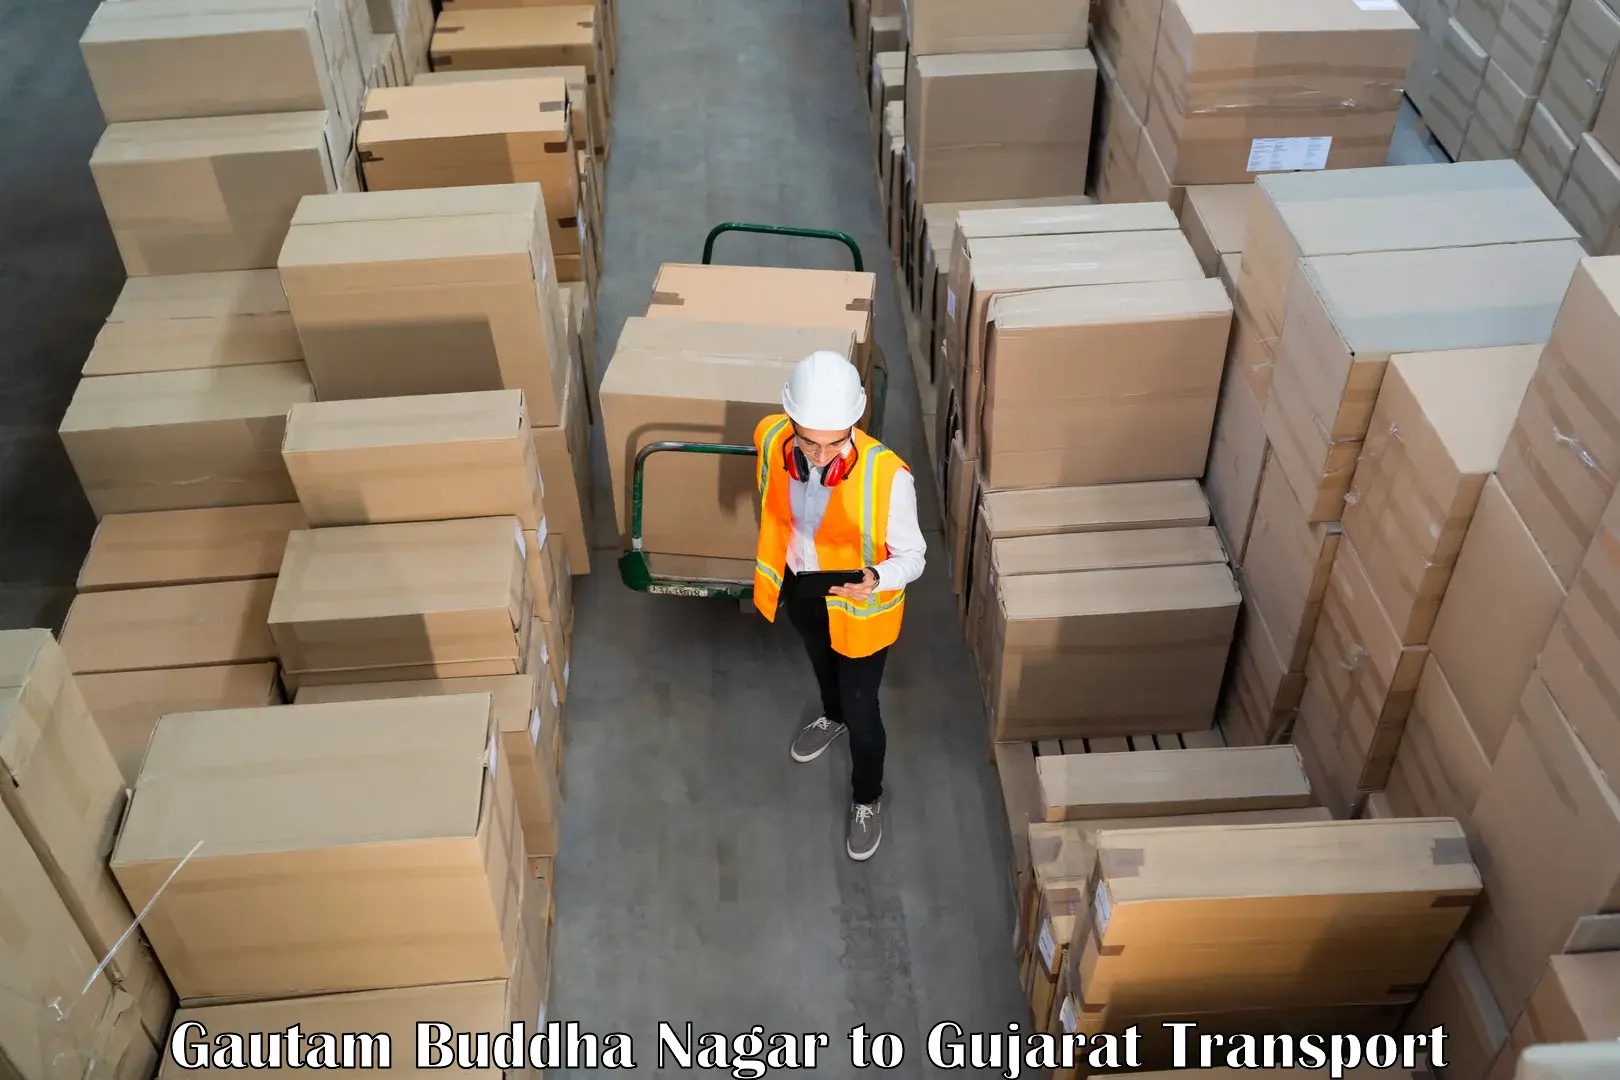 Goods delivery service Gautam Buddha Nagar to Vapi